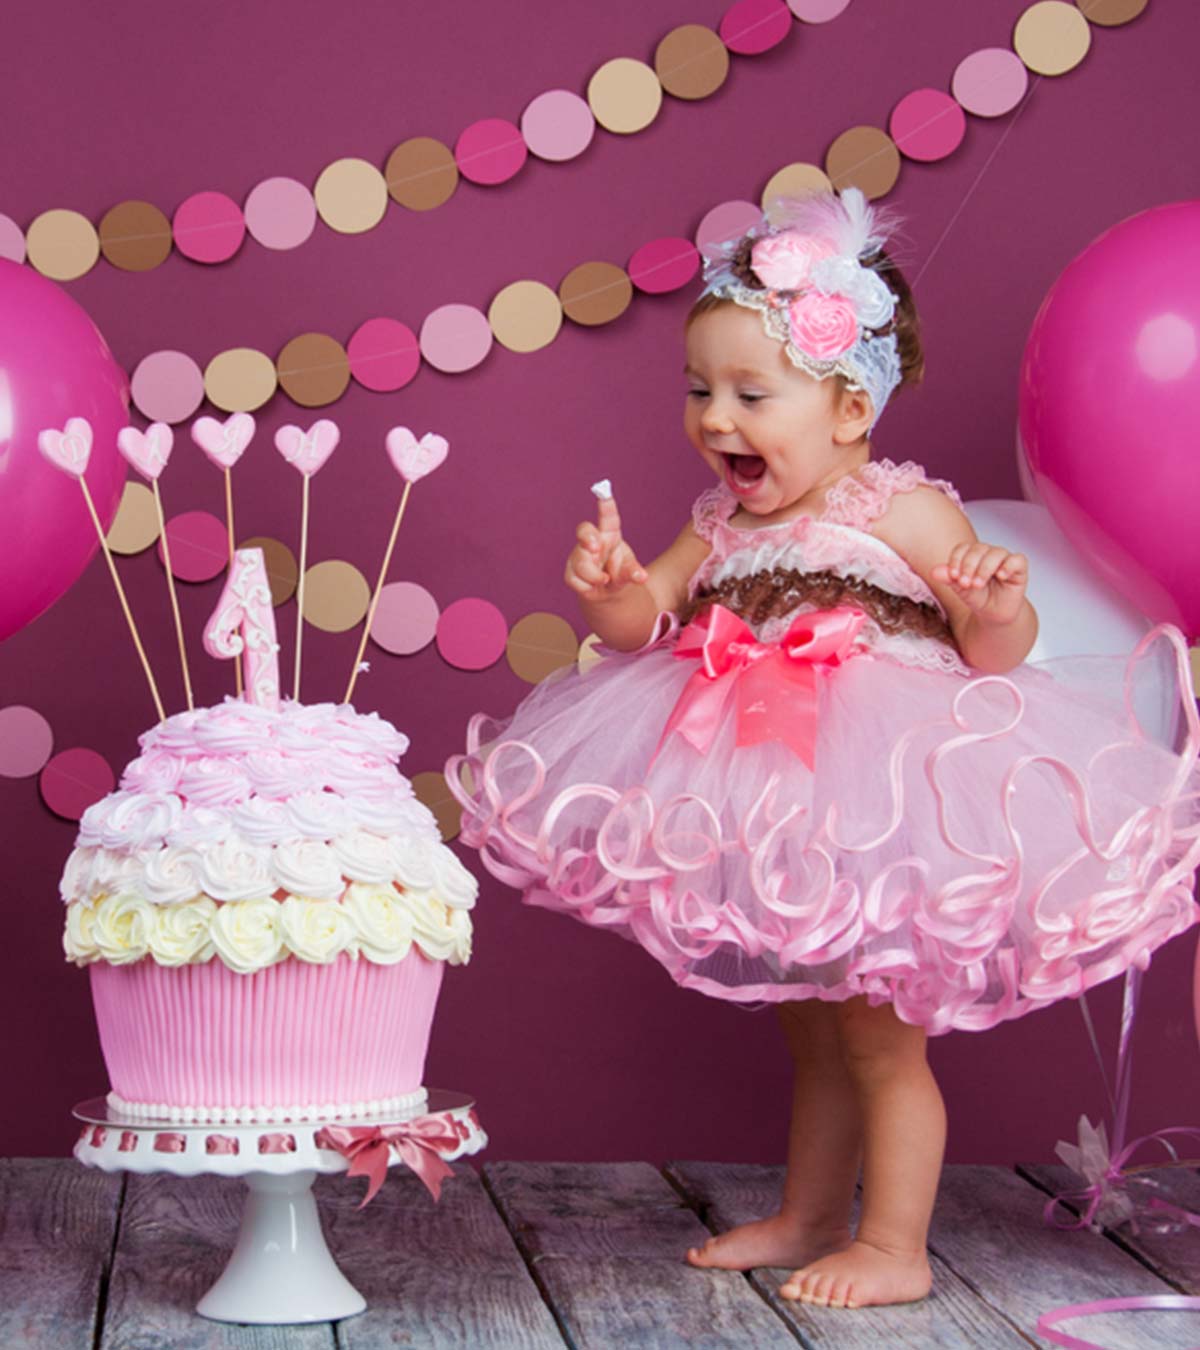 बच्चों का पहला जन्मदिन कैसे मनाएं? थीम्स, चेकलिस्ट व जरूरी टिप्स | First Birthday Party Ideas In Hindi